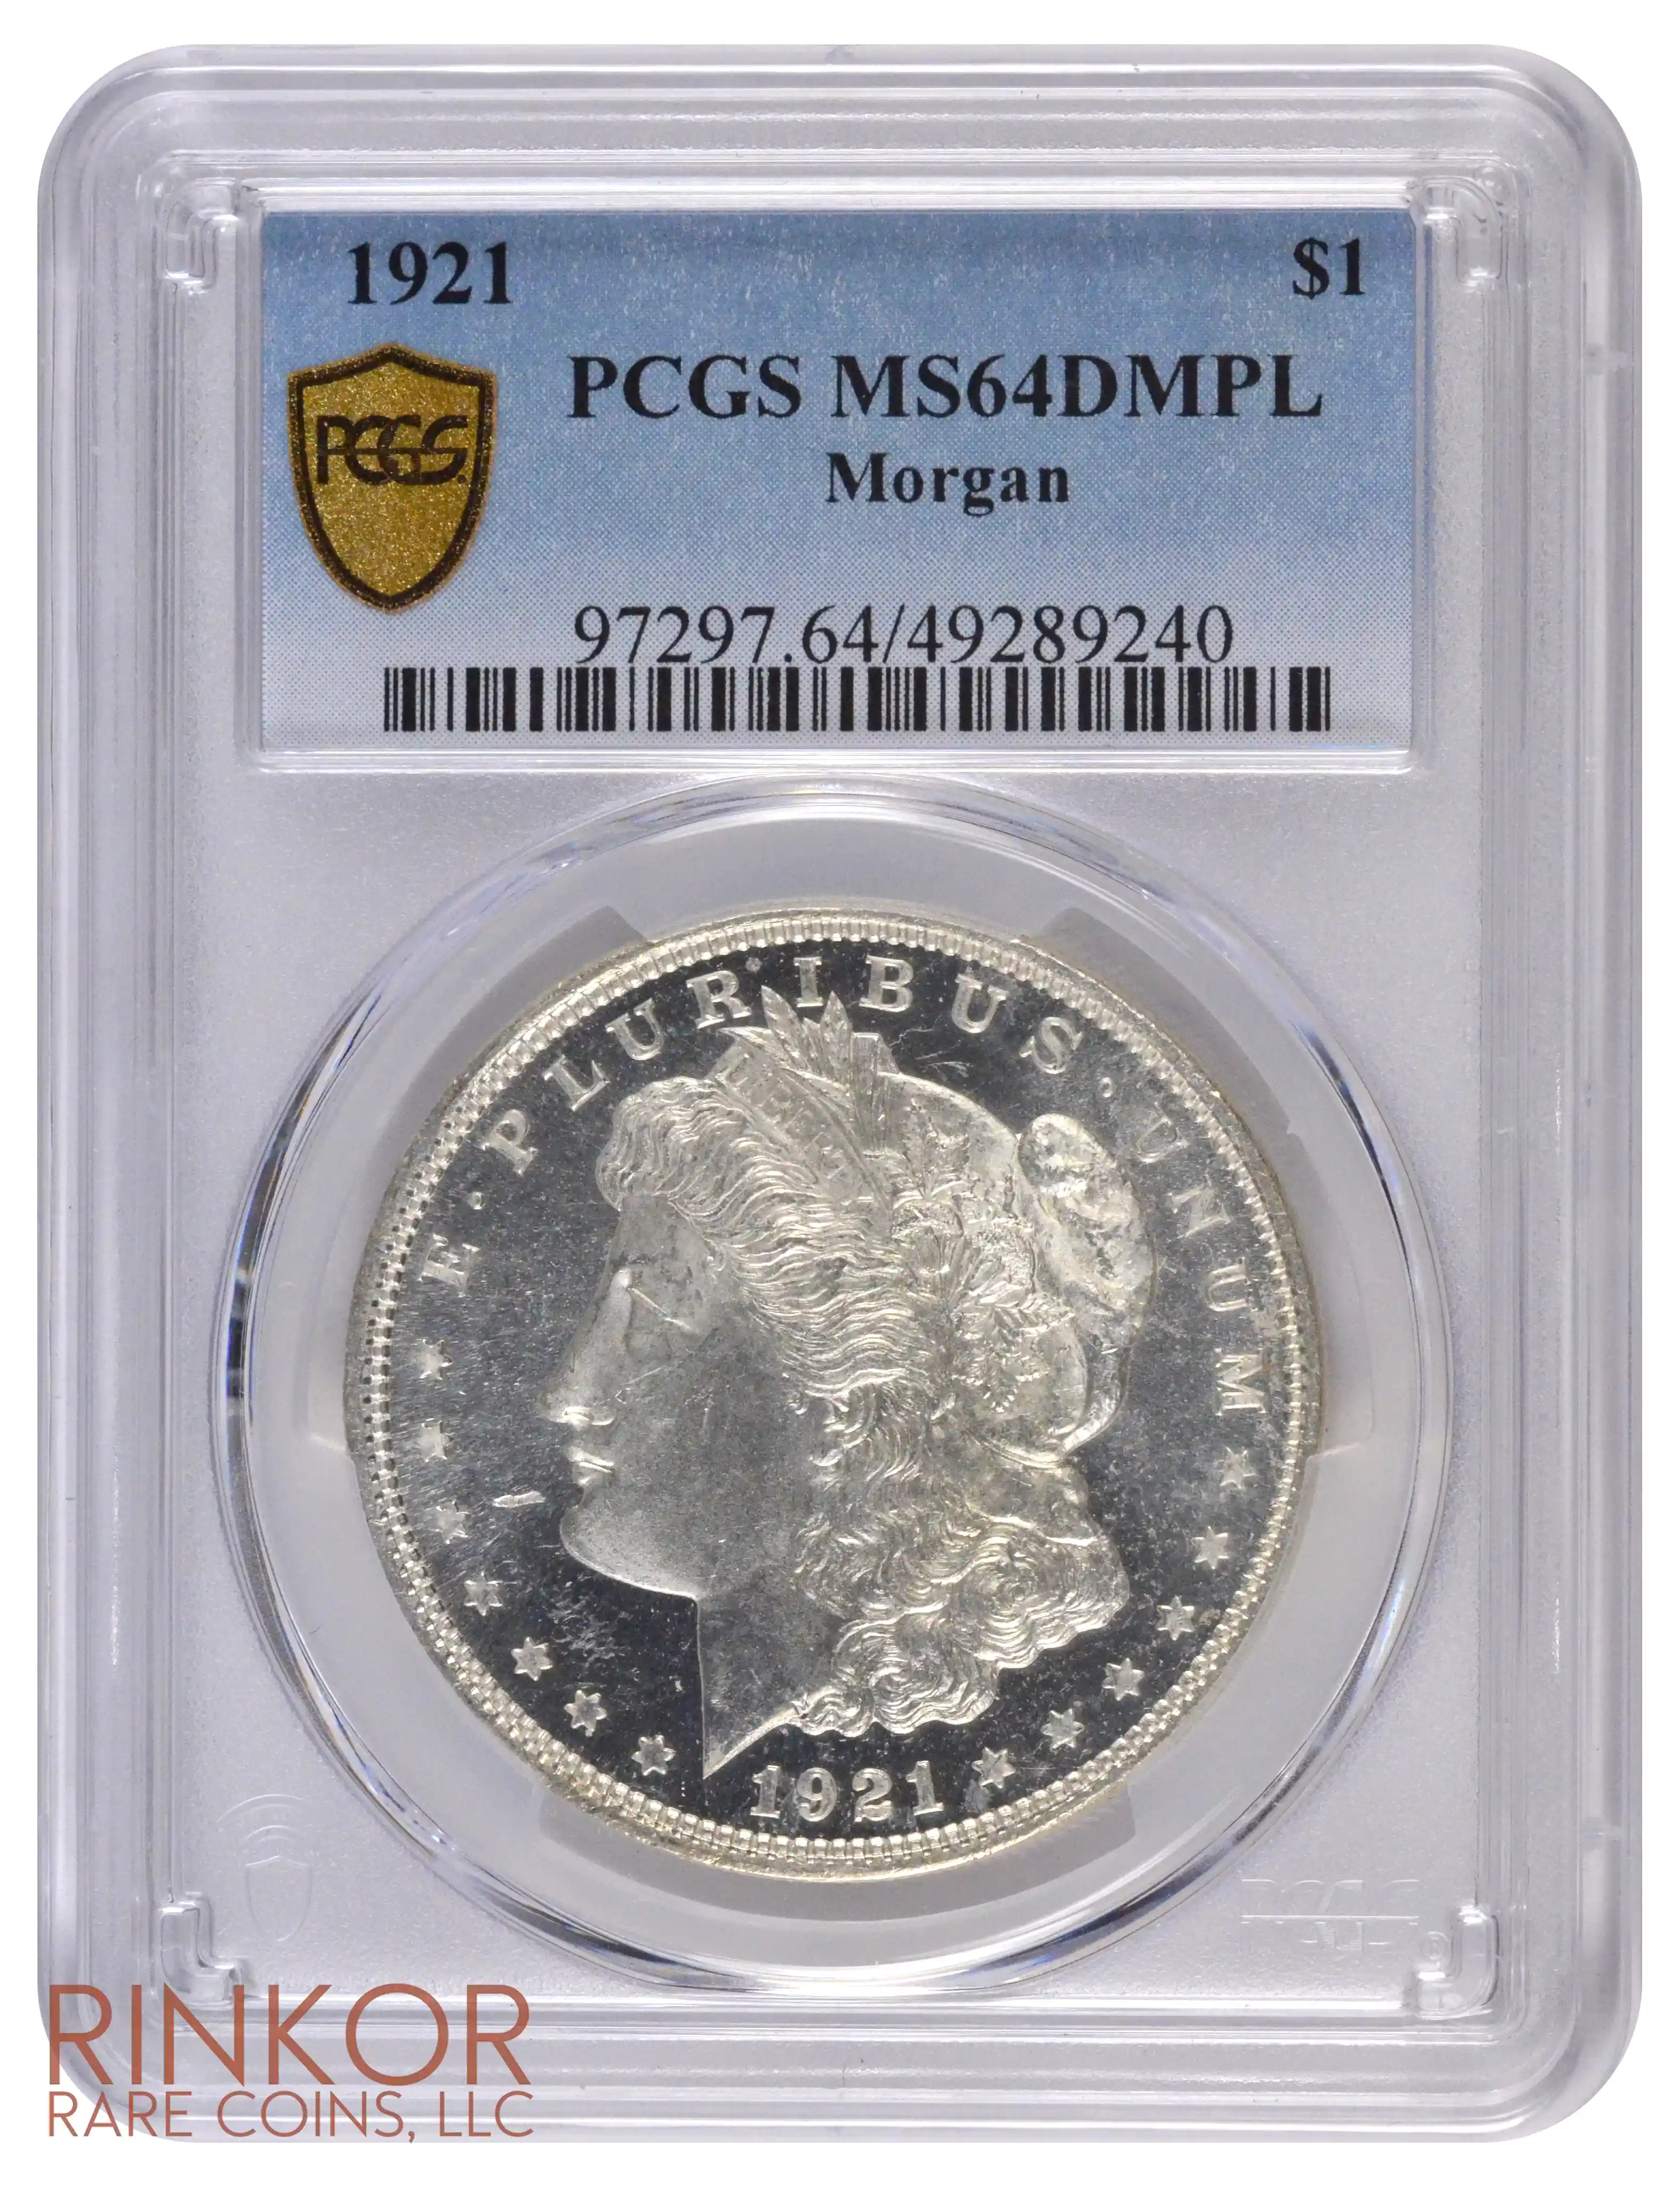 1921 $1 Morgan PCGS MS 64 DMPL